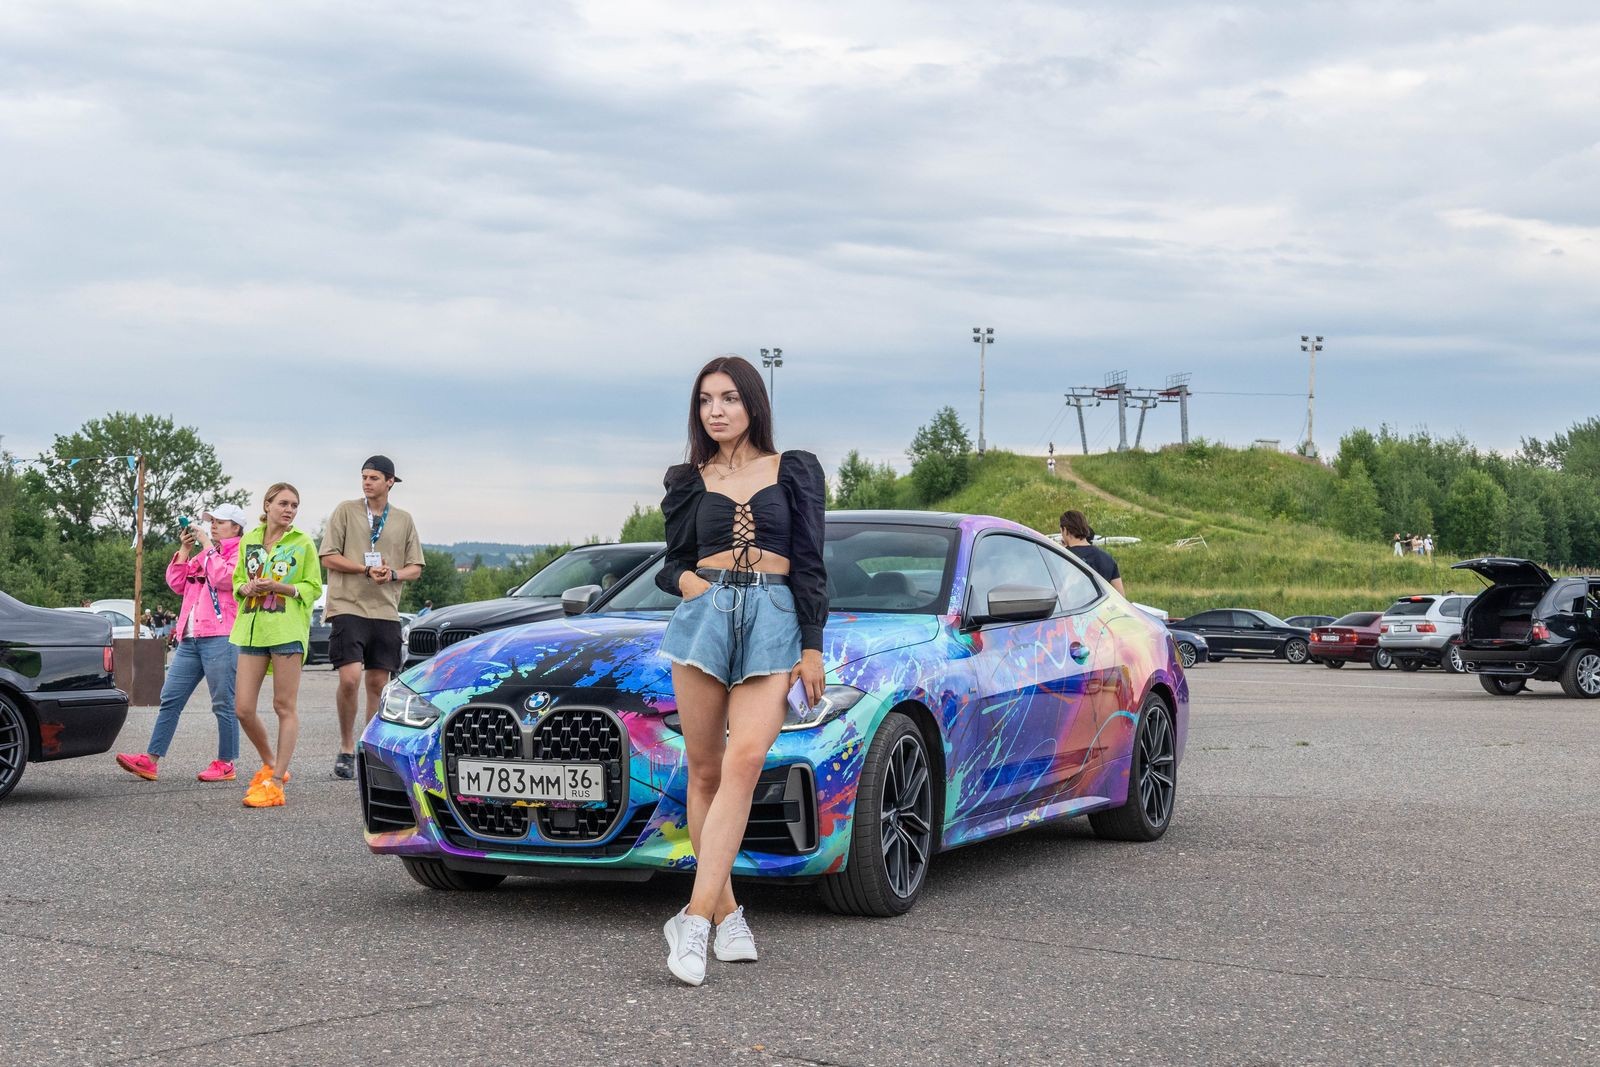 Юбилейный фестиваль Bimmerdays собрал самые крутые BMW страны